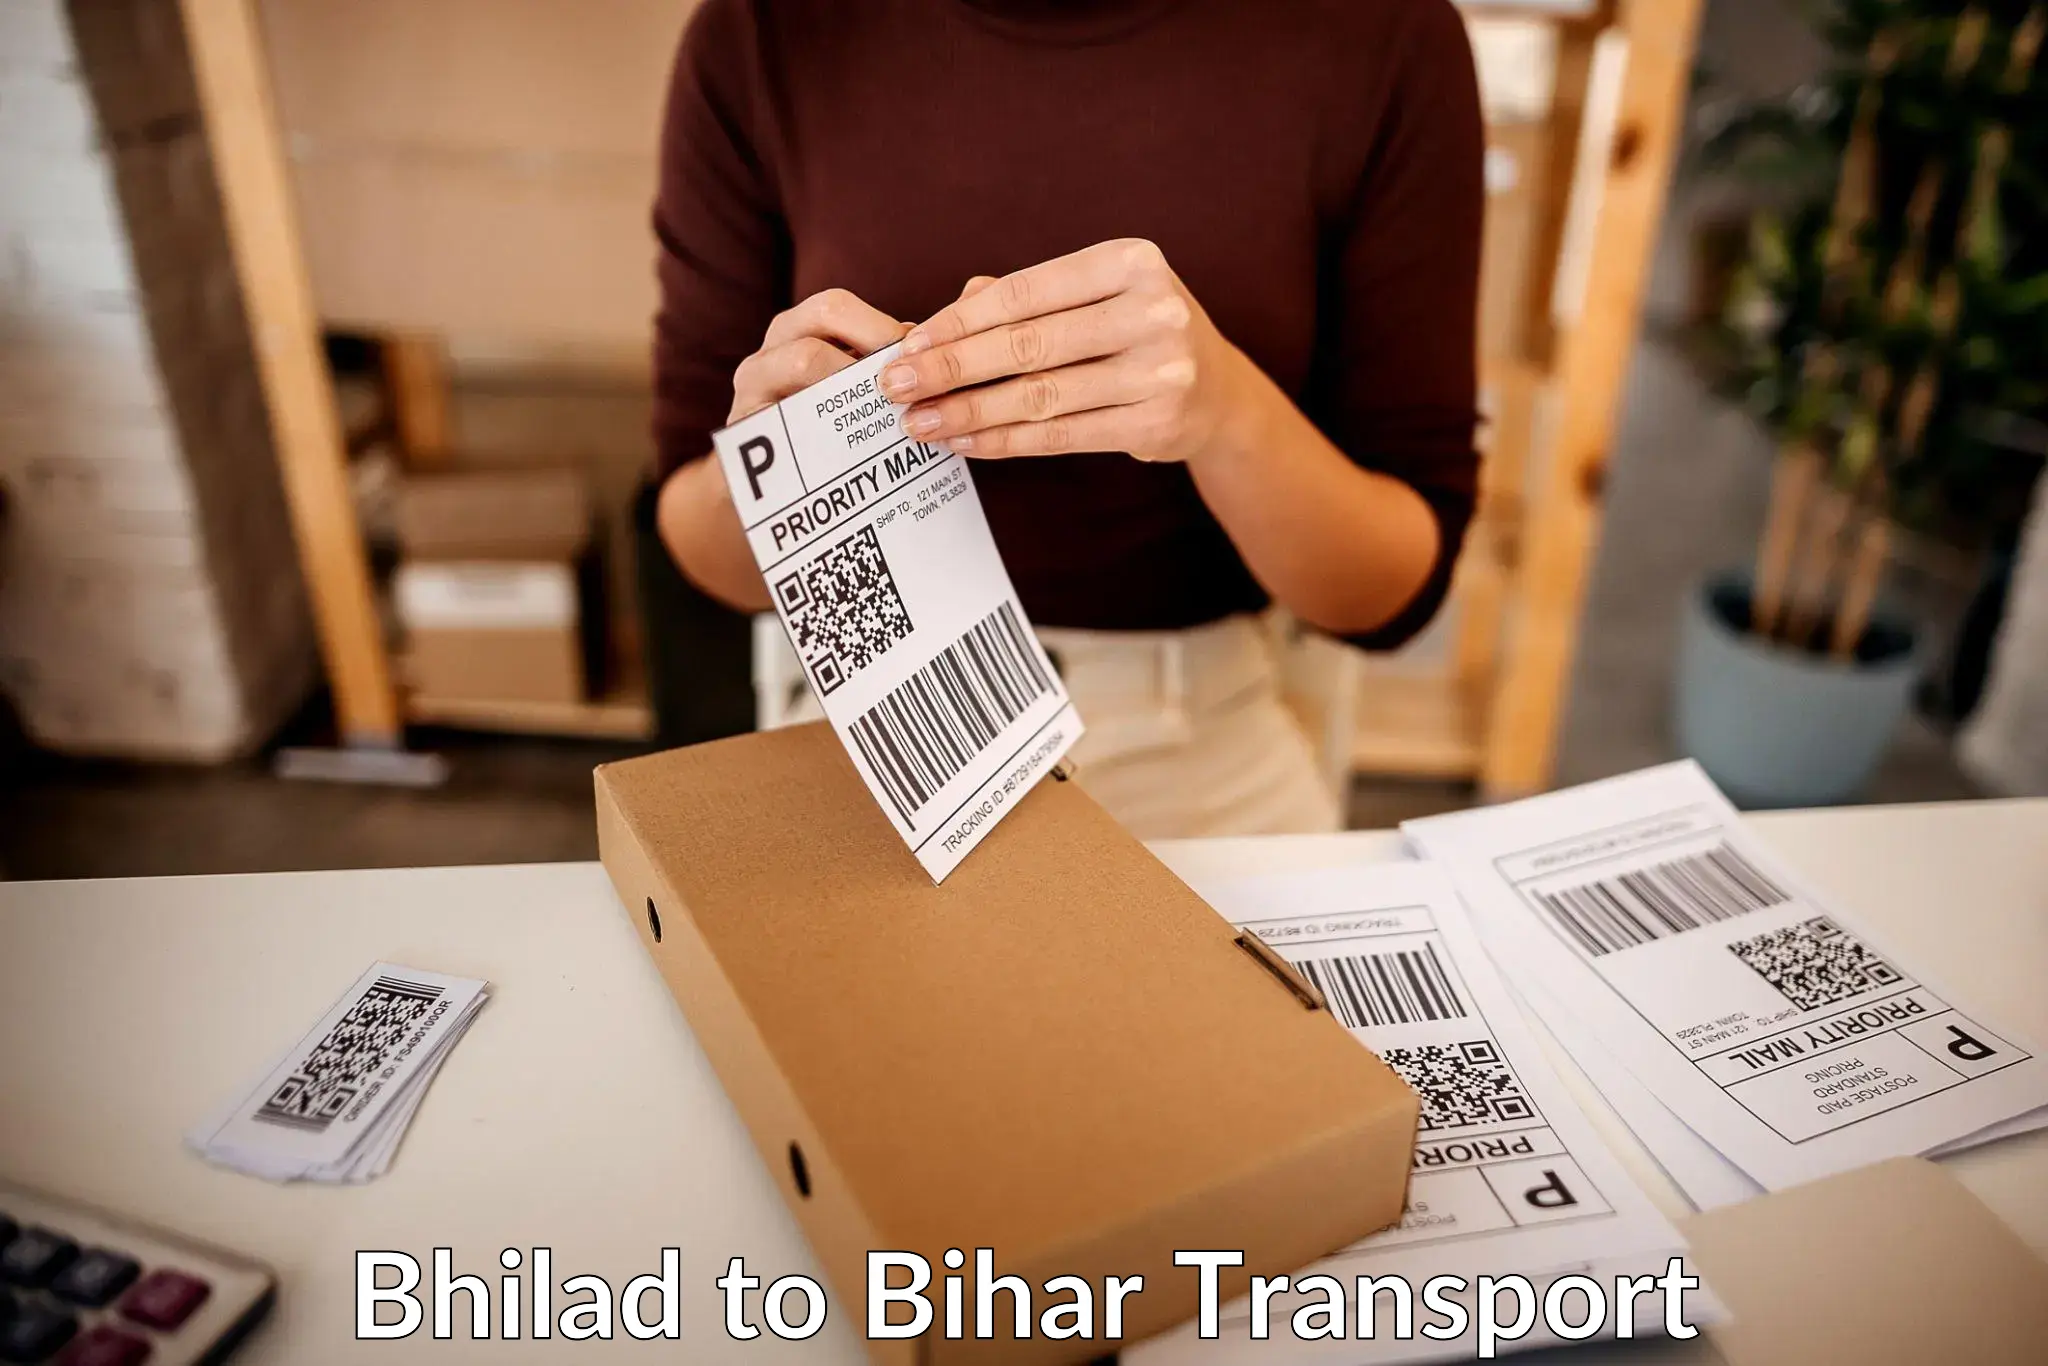 Two wheeler parcel service Bhilad to Chakai